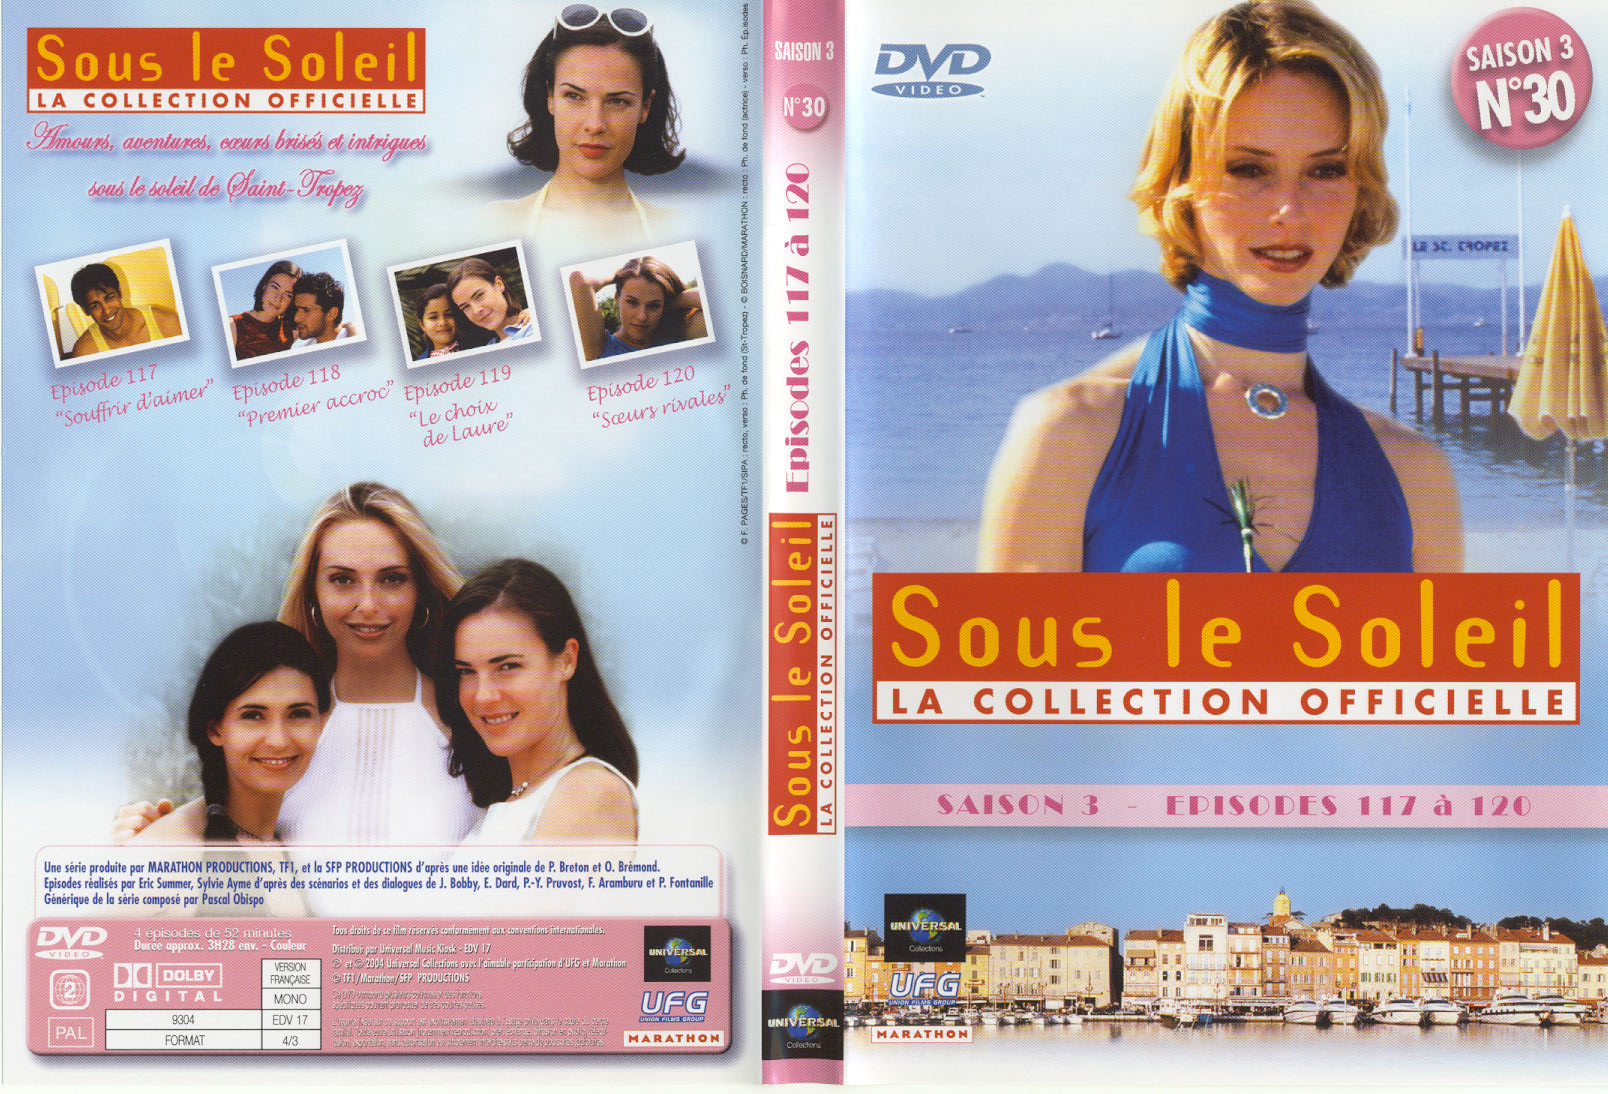 Jaquette DVD Sous le soleil saison 3 vol 30